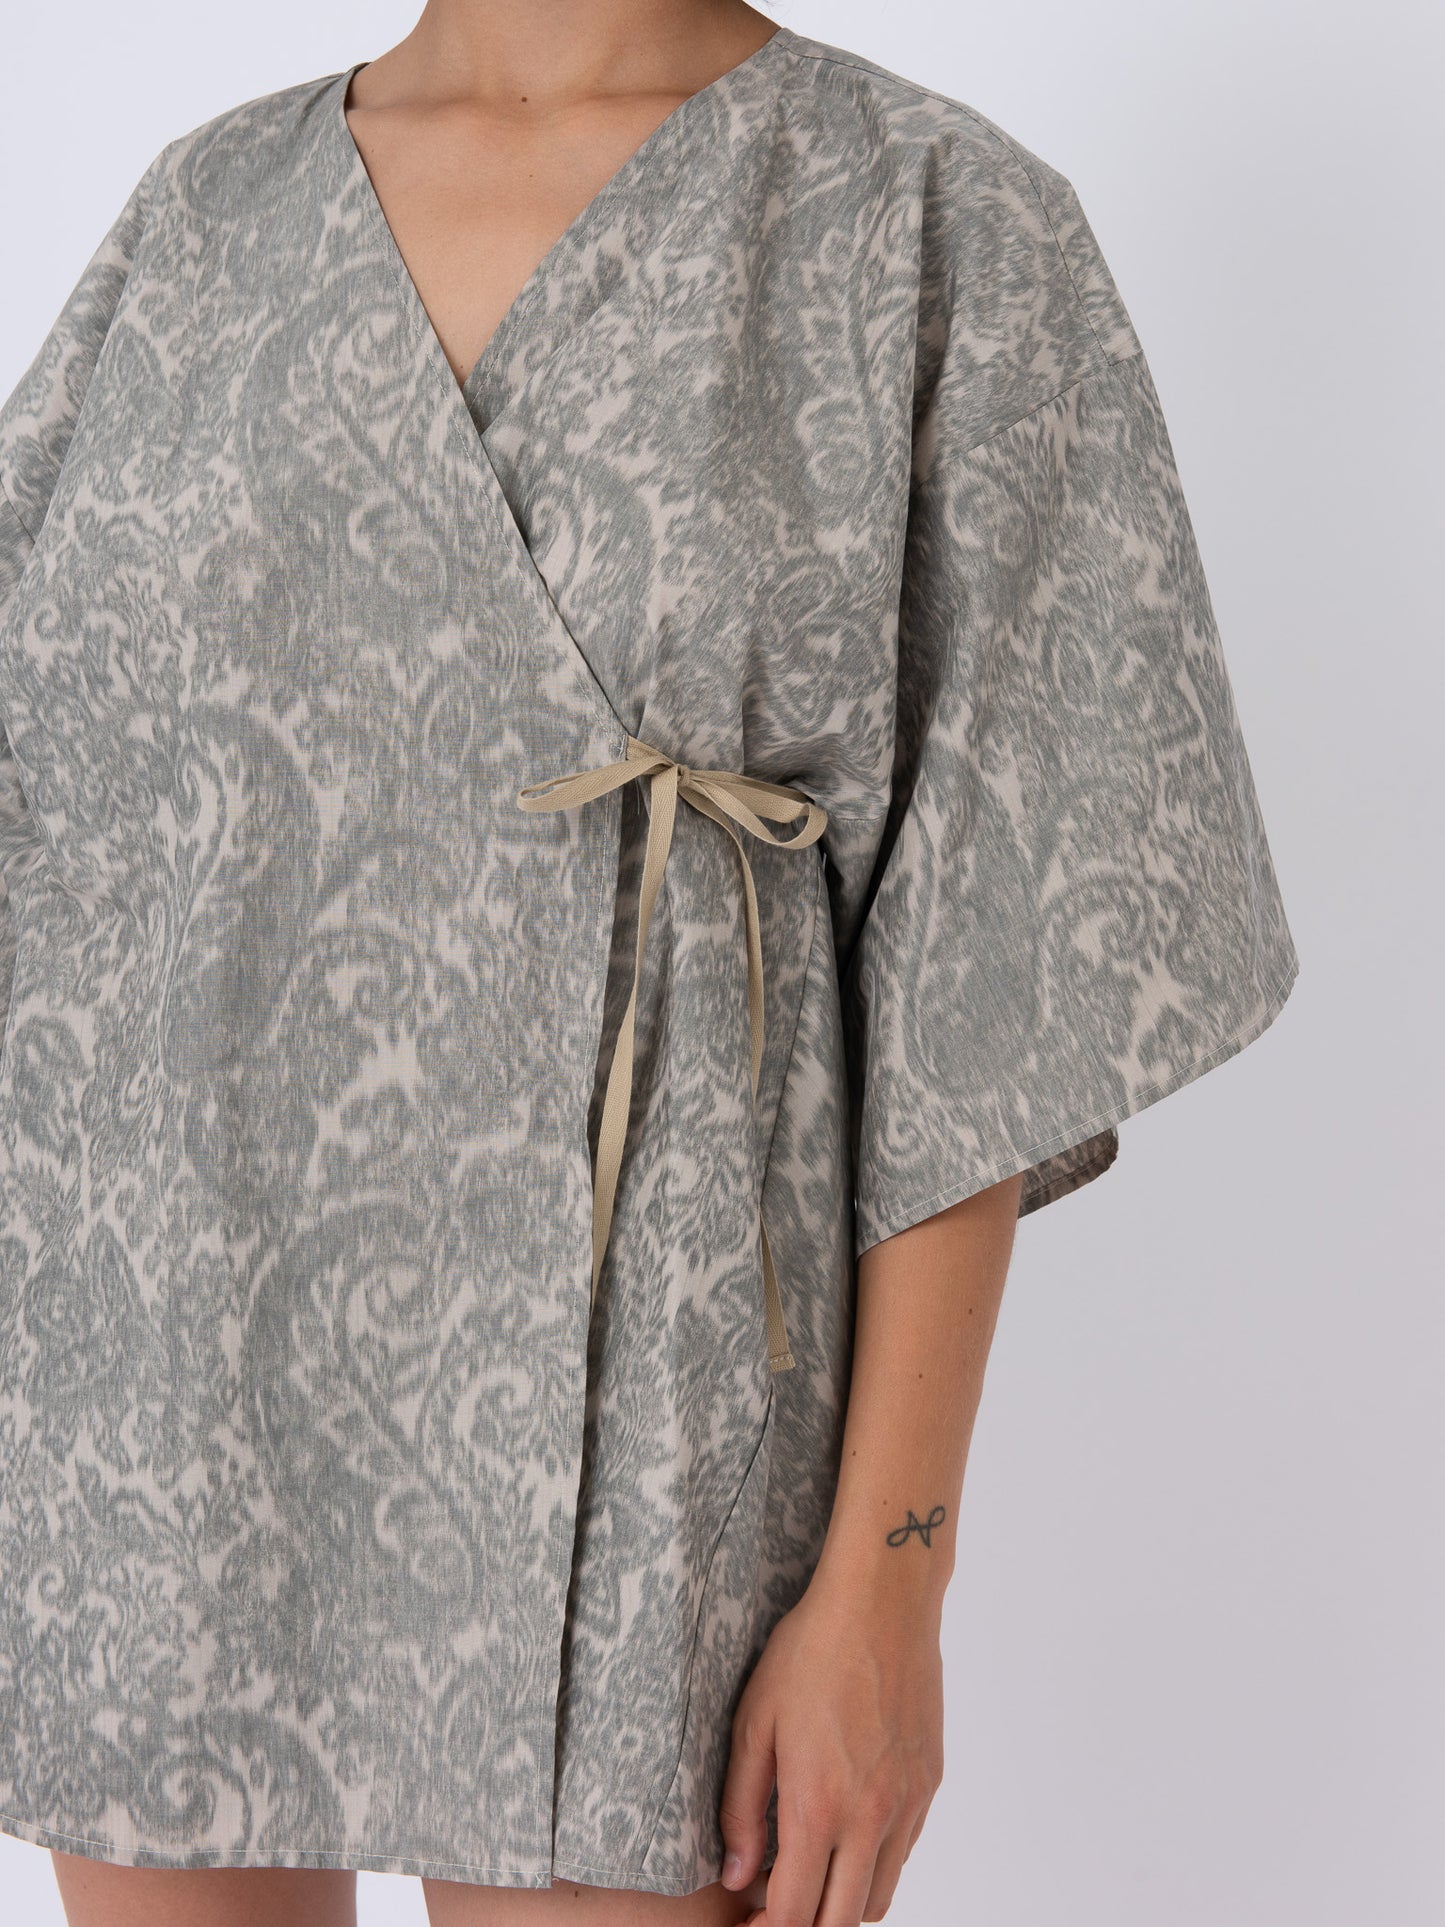 Fujiko Dress in Paisley Silk